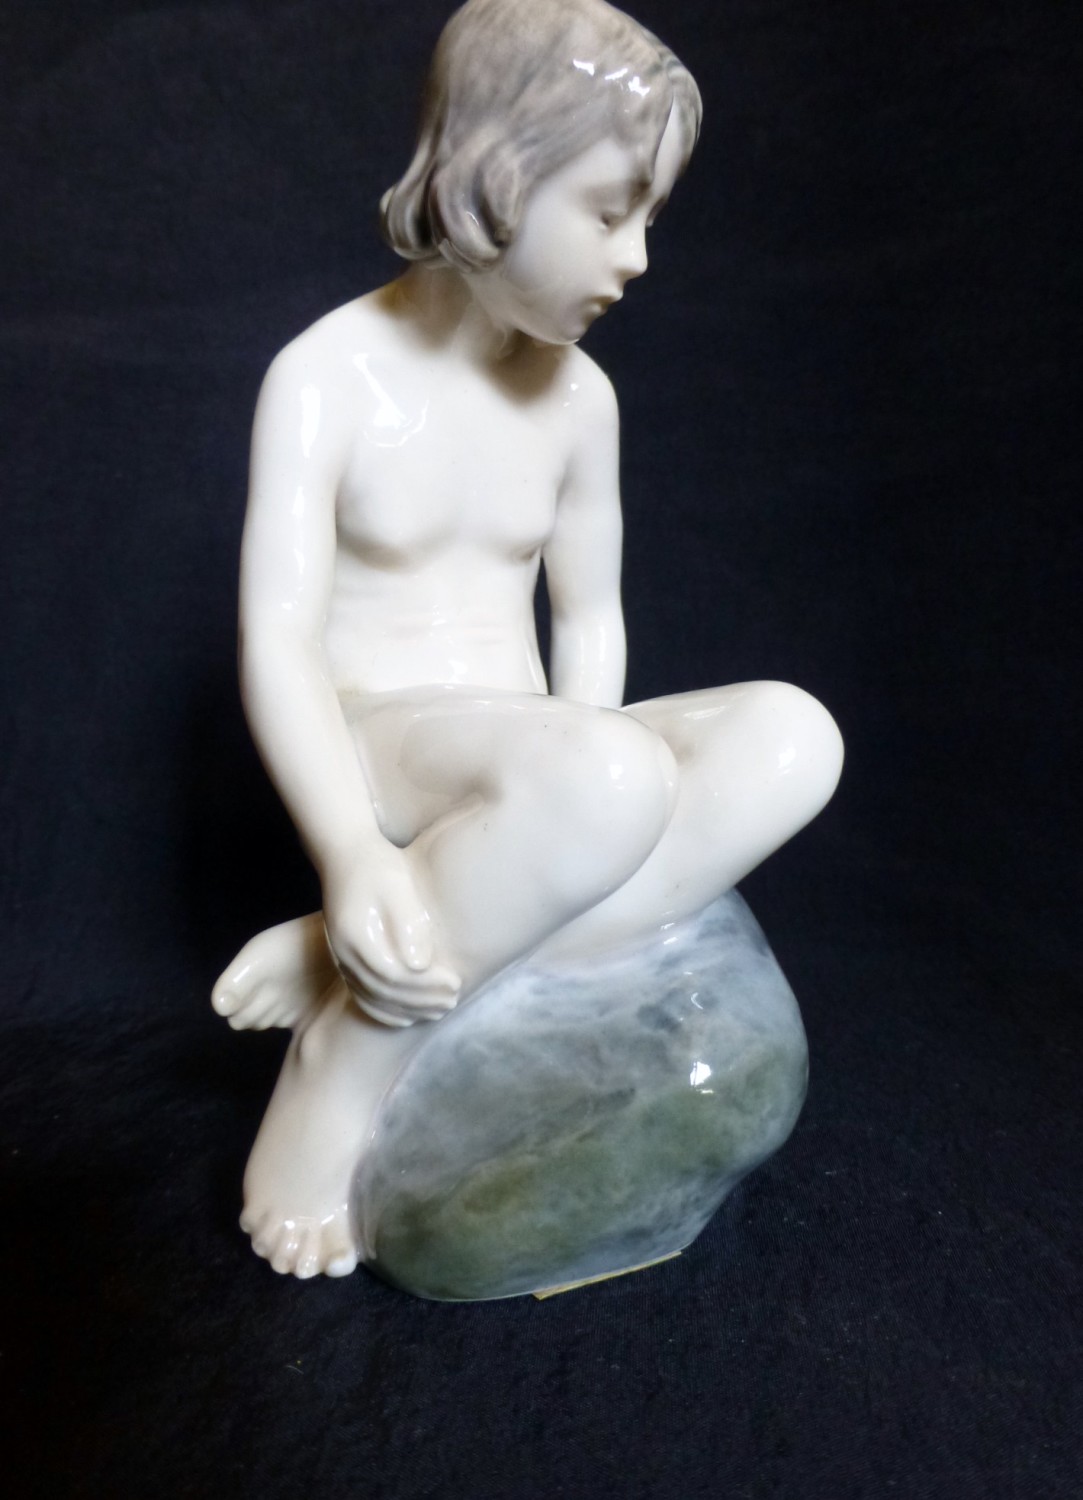 Royal Copenhagen naked girl figurine